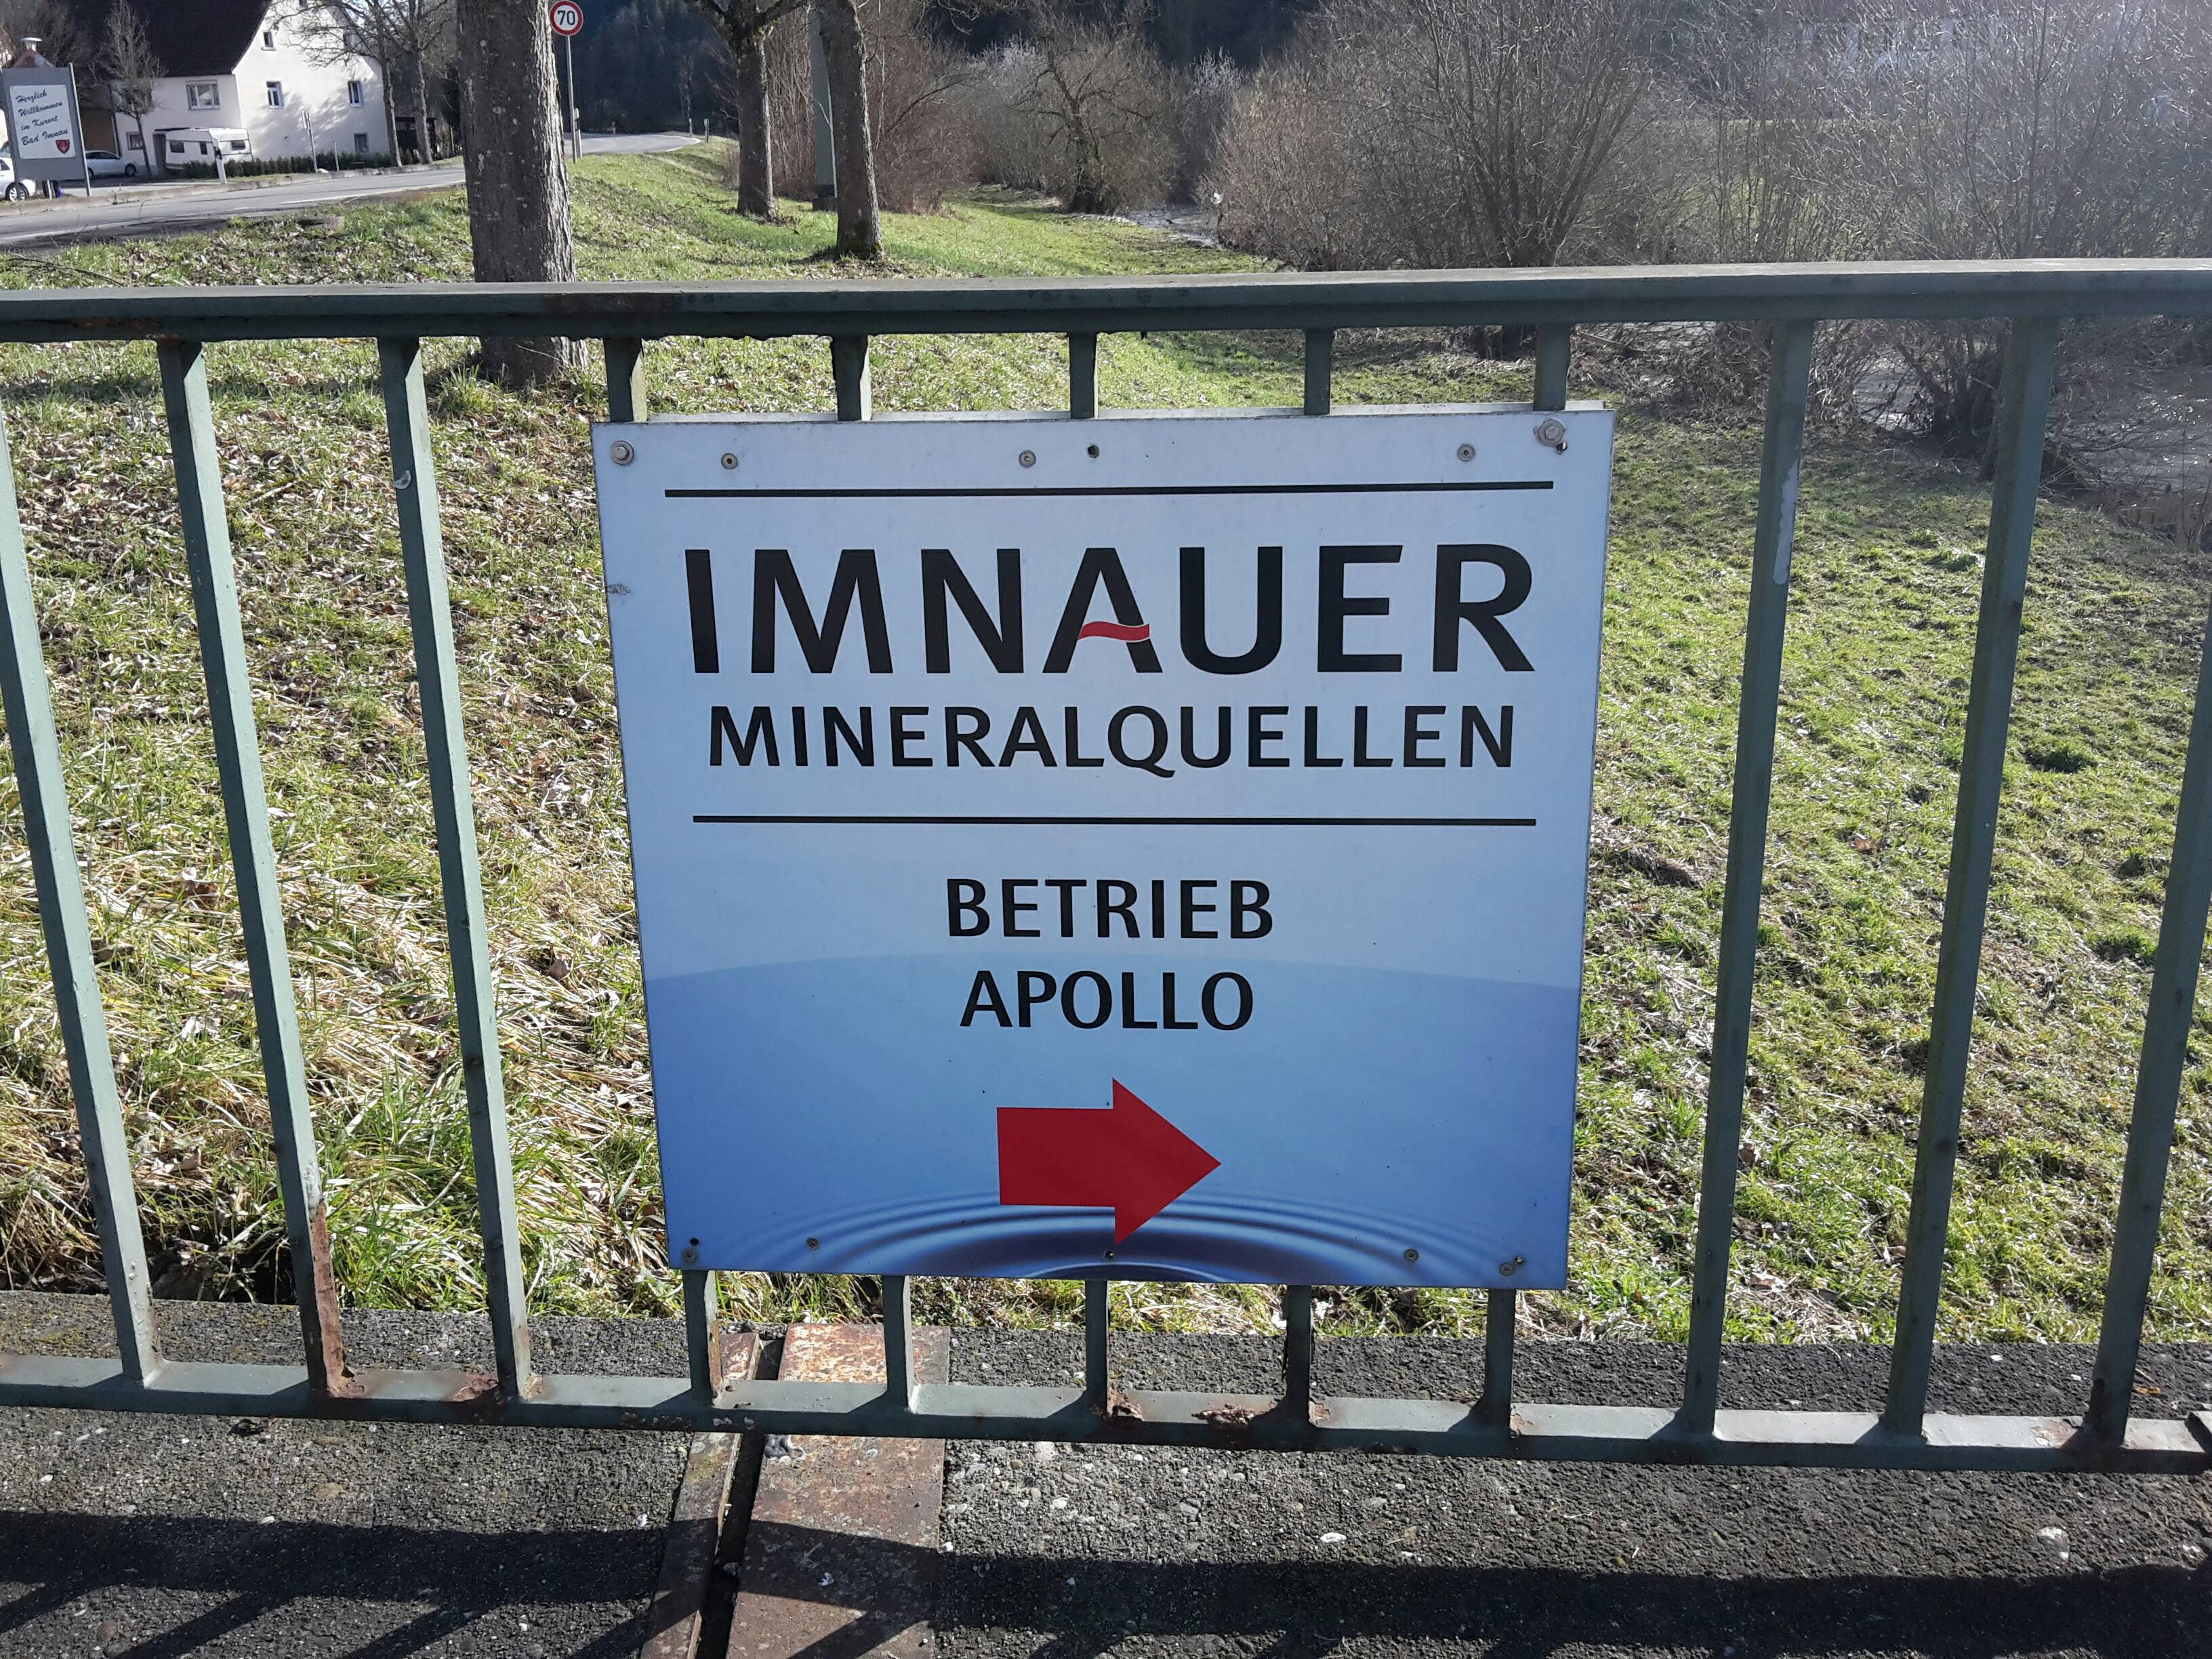 Imnauer Mineralquellen - Betrieb Apollo